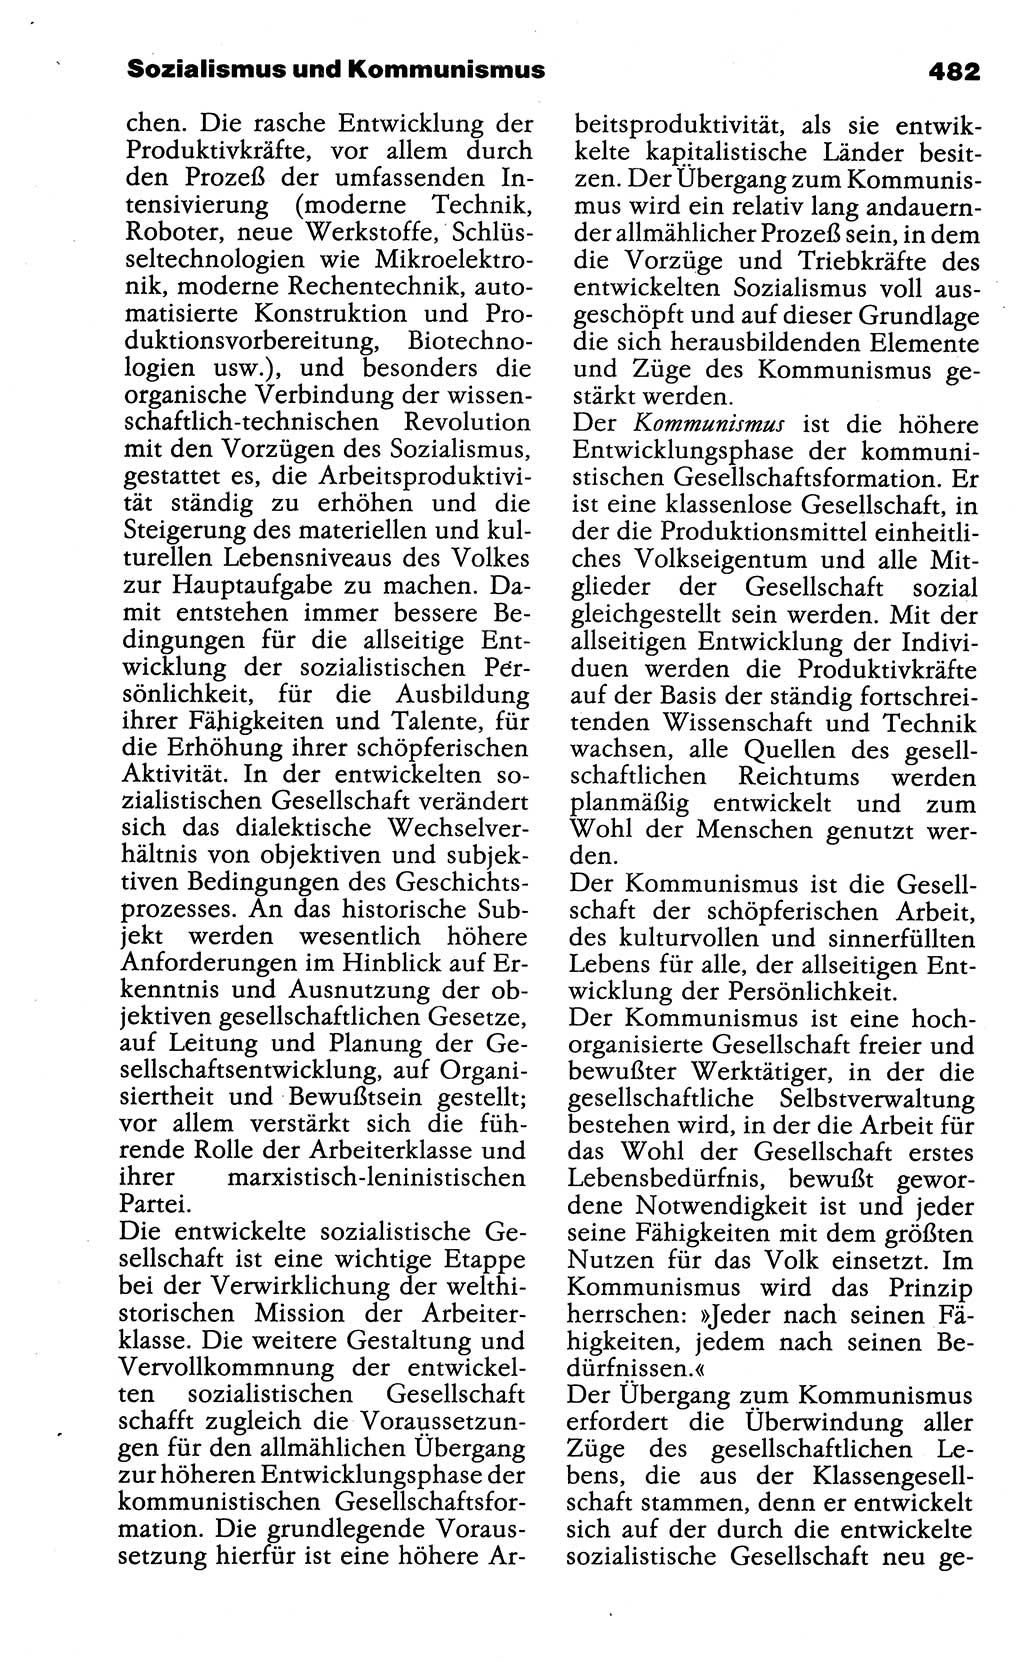 Wörterbuch der marxistisch-leninistischen Philosophie [Deutsche Demokratische Republik (DDR)] 1985, Seite 482 (Wb. ML Phil. DDR 1985, S. 482)